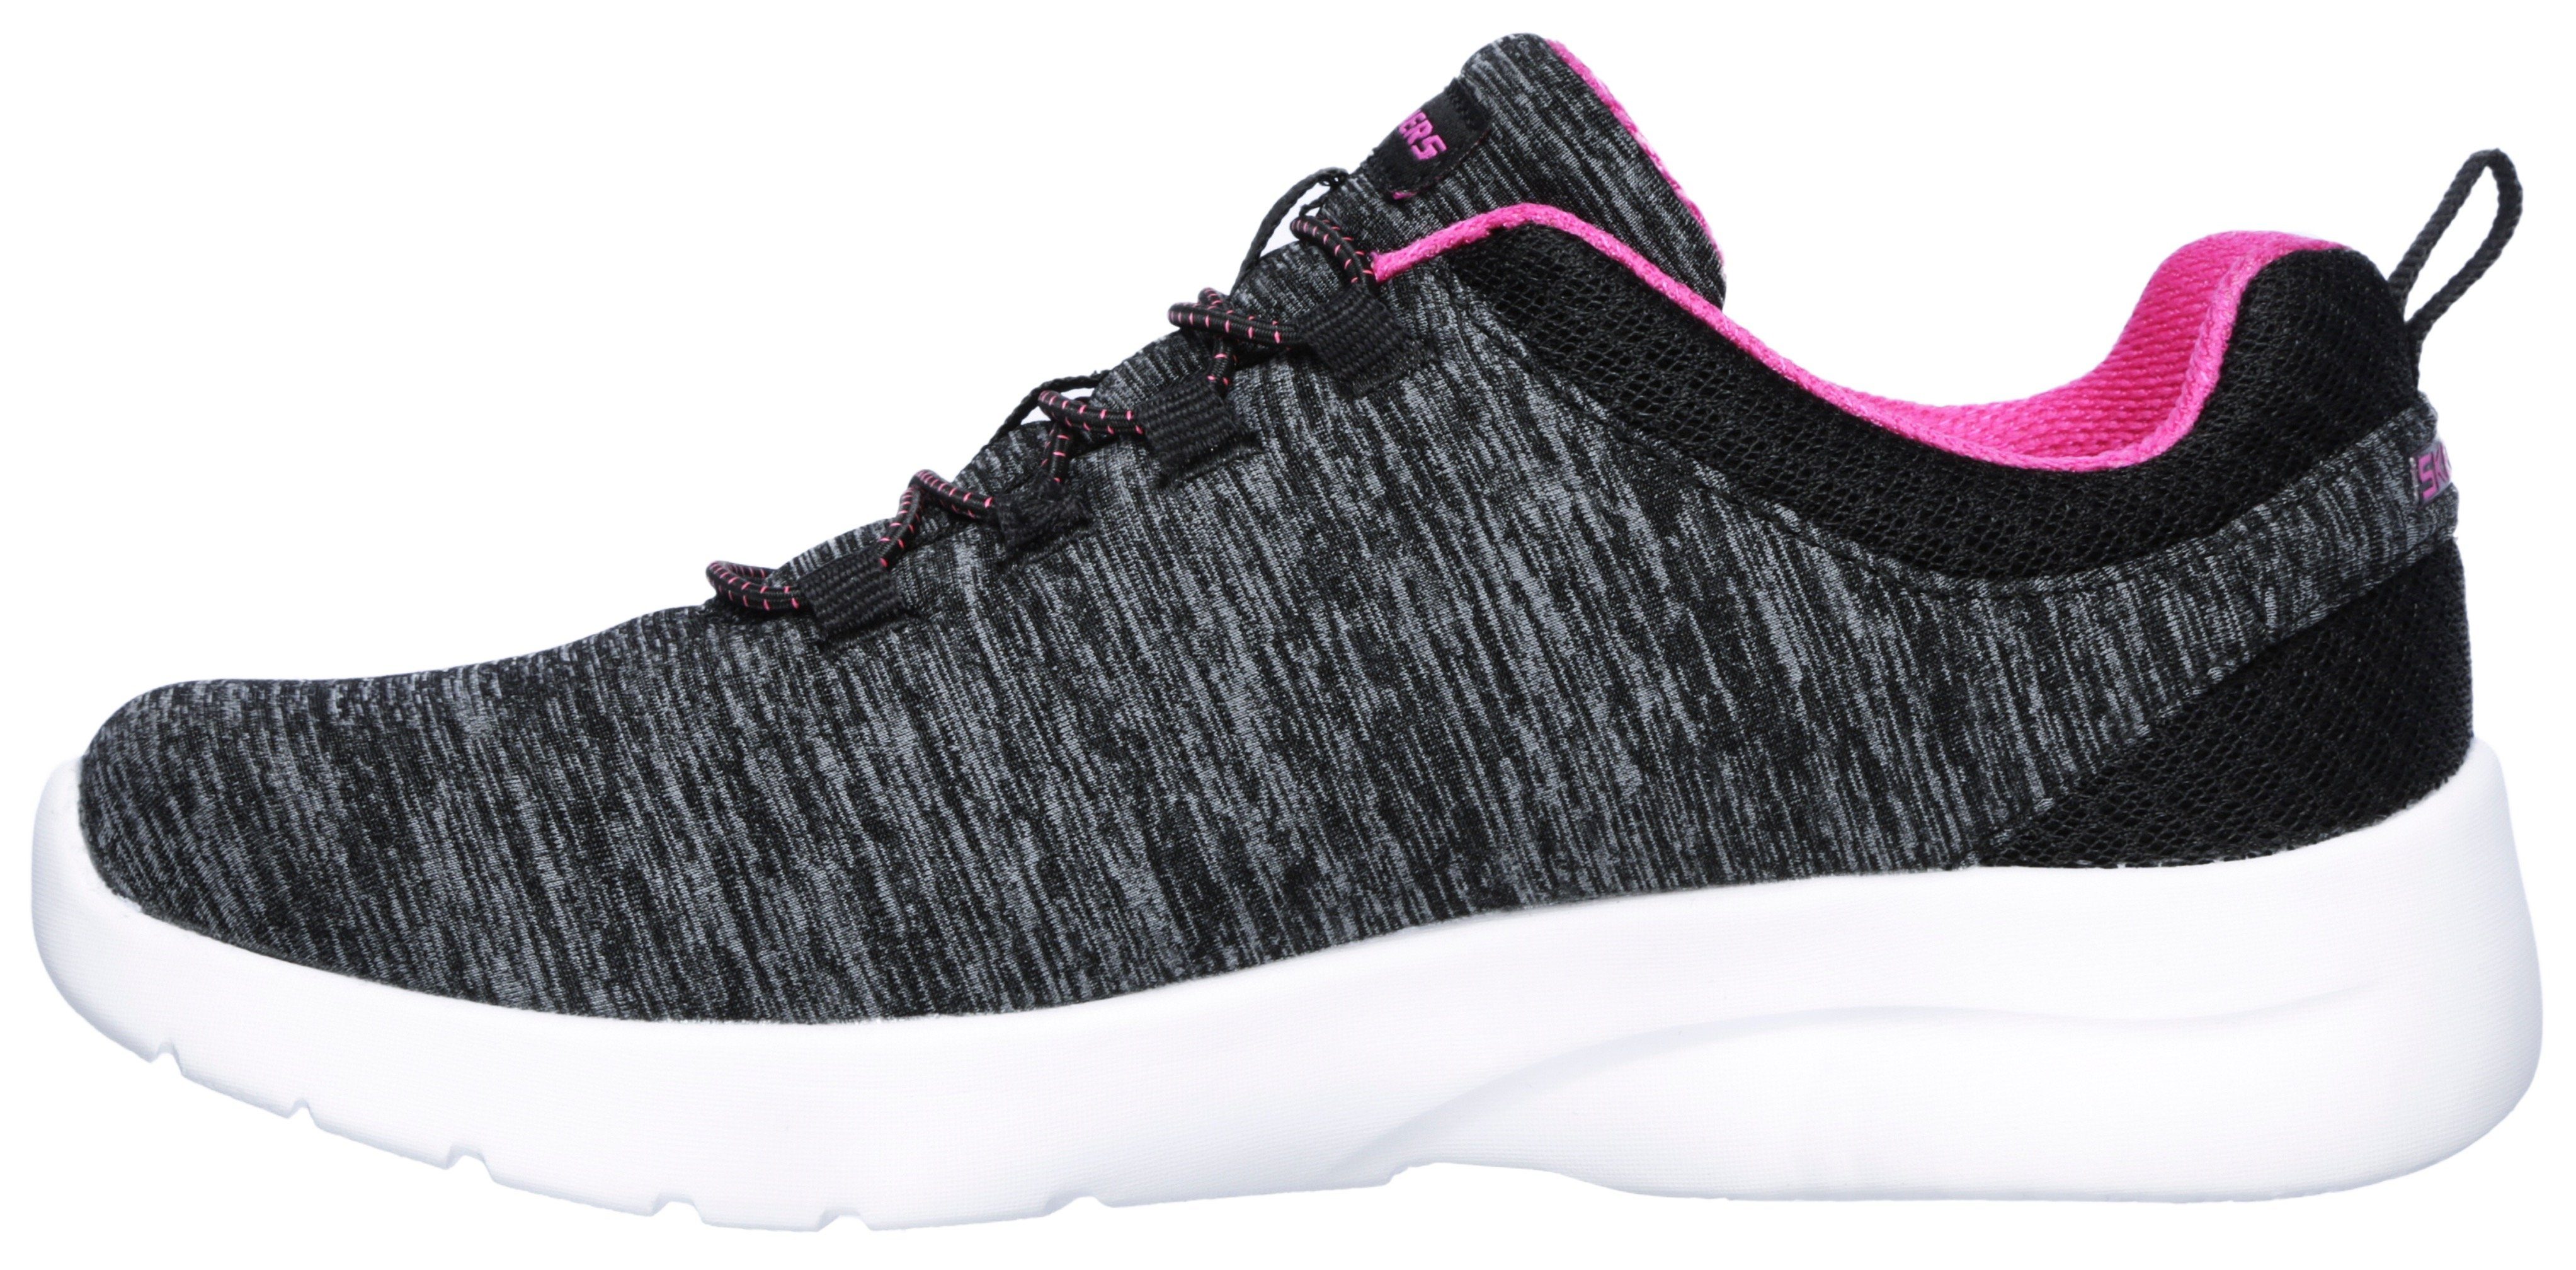 Skechers DYNAMIGHT 2.0-IN A FLASH geeignet schwarz-pink für Slip-On Sneaker Maschinenwäsche